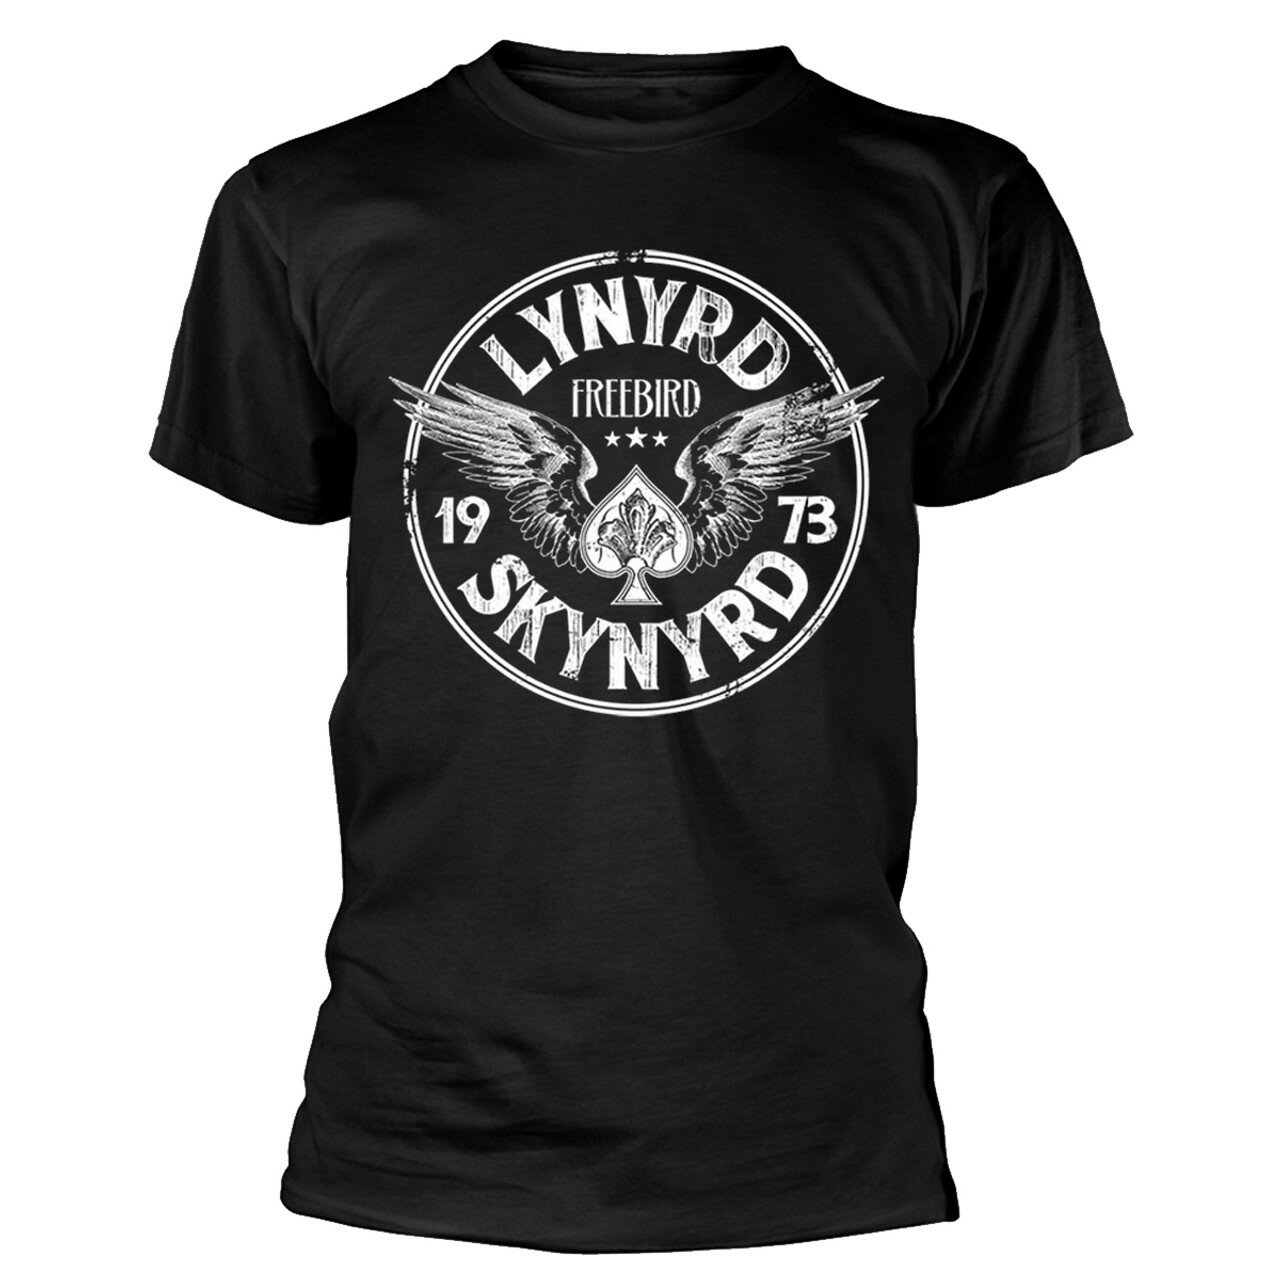 (レーナード スキナード) Lynyrd Skynyrd オフィシャル商品 ユニセックス Freebird ´73 Wings Tシャツ コットン 半袖 トップス 【海外通販】